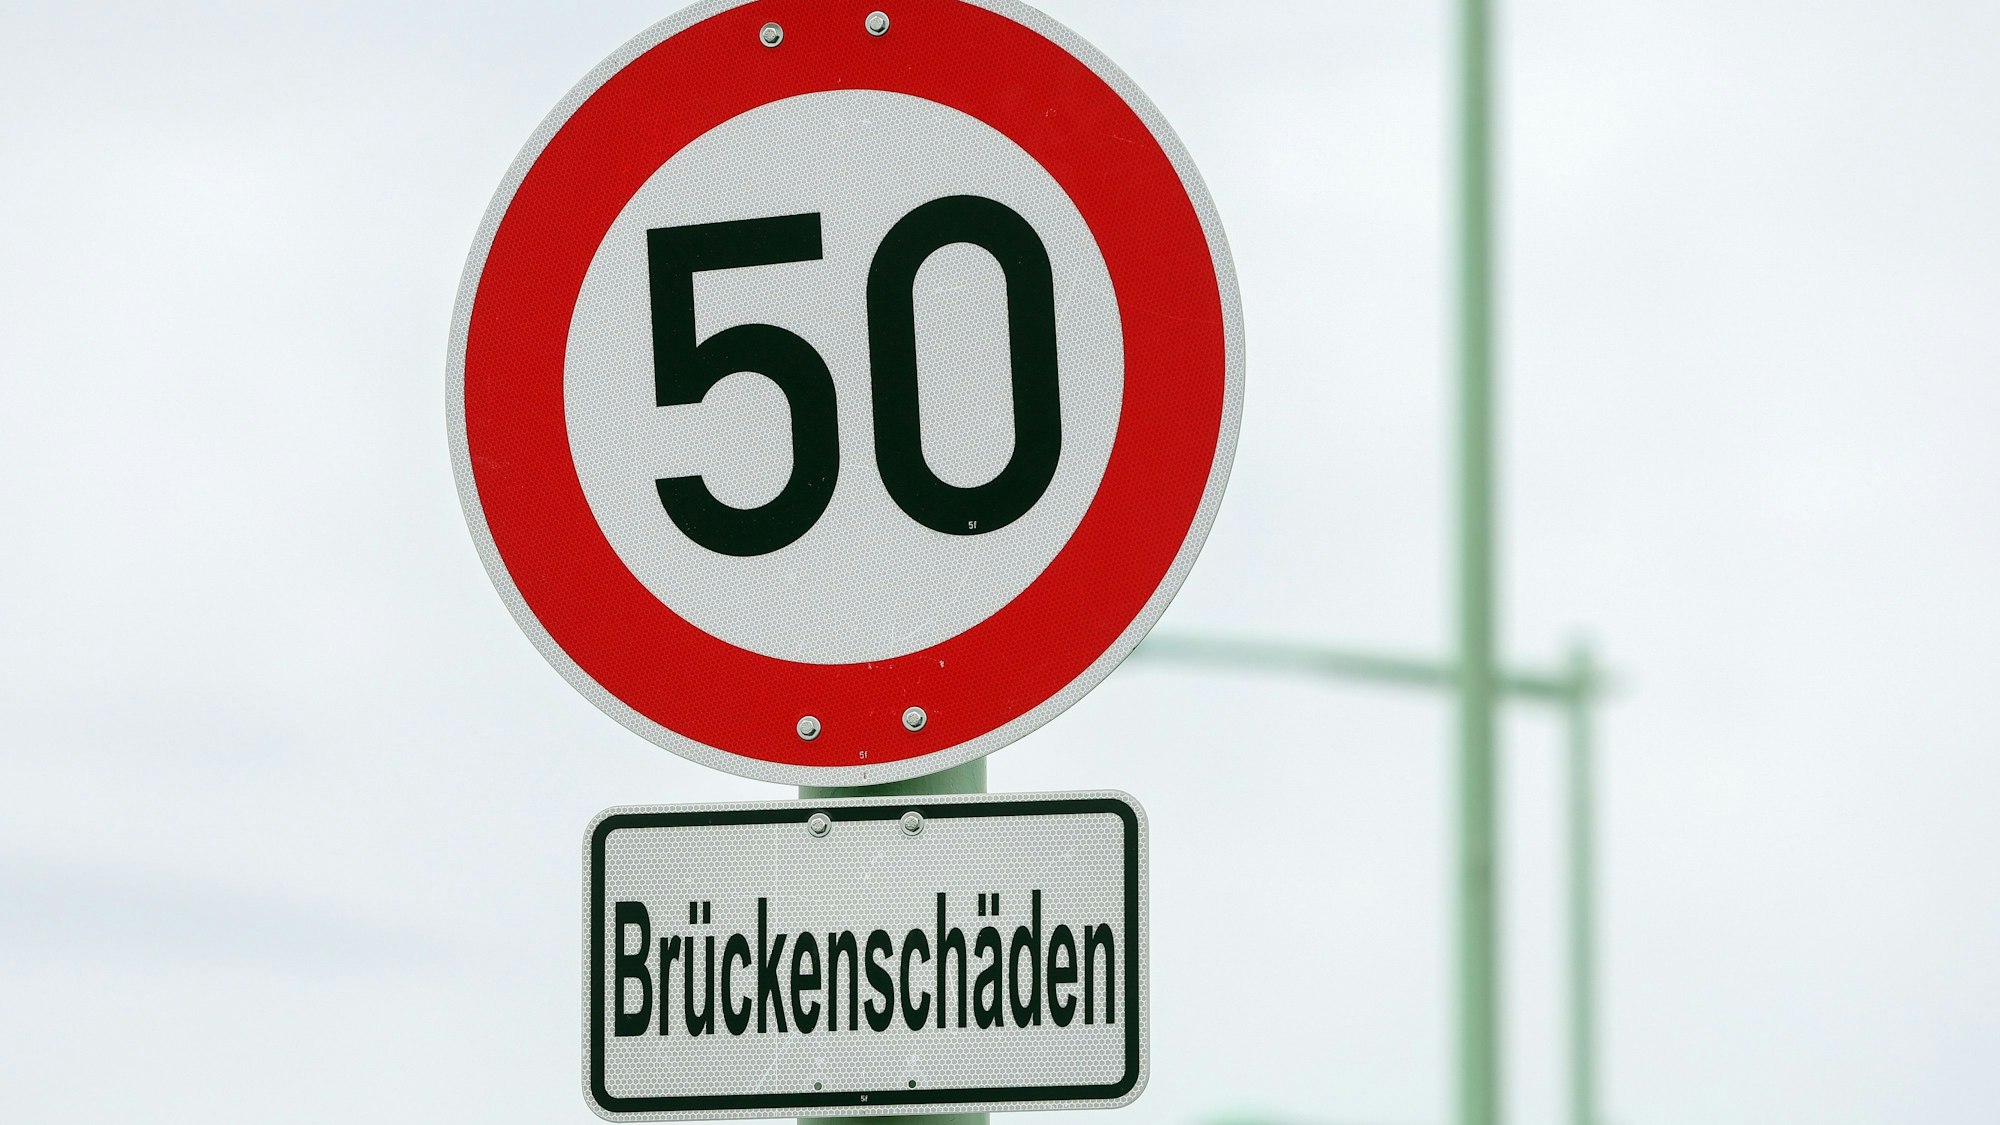 Auf einem Schild stehen 50 als zulässige Höchstgeschwindigkeit, darunter ein Hinweis auf Brückenschäden.